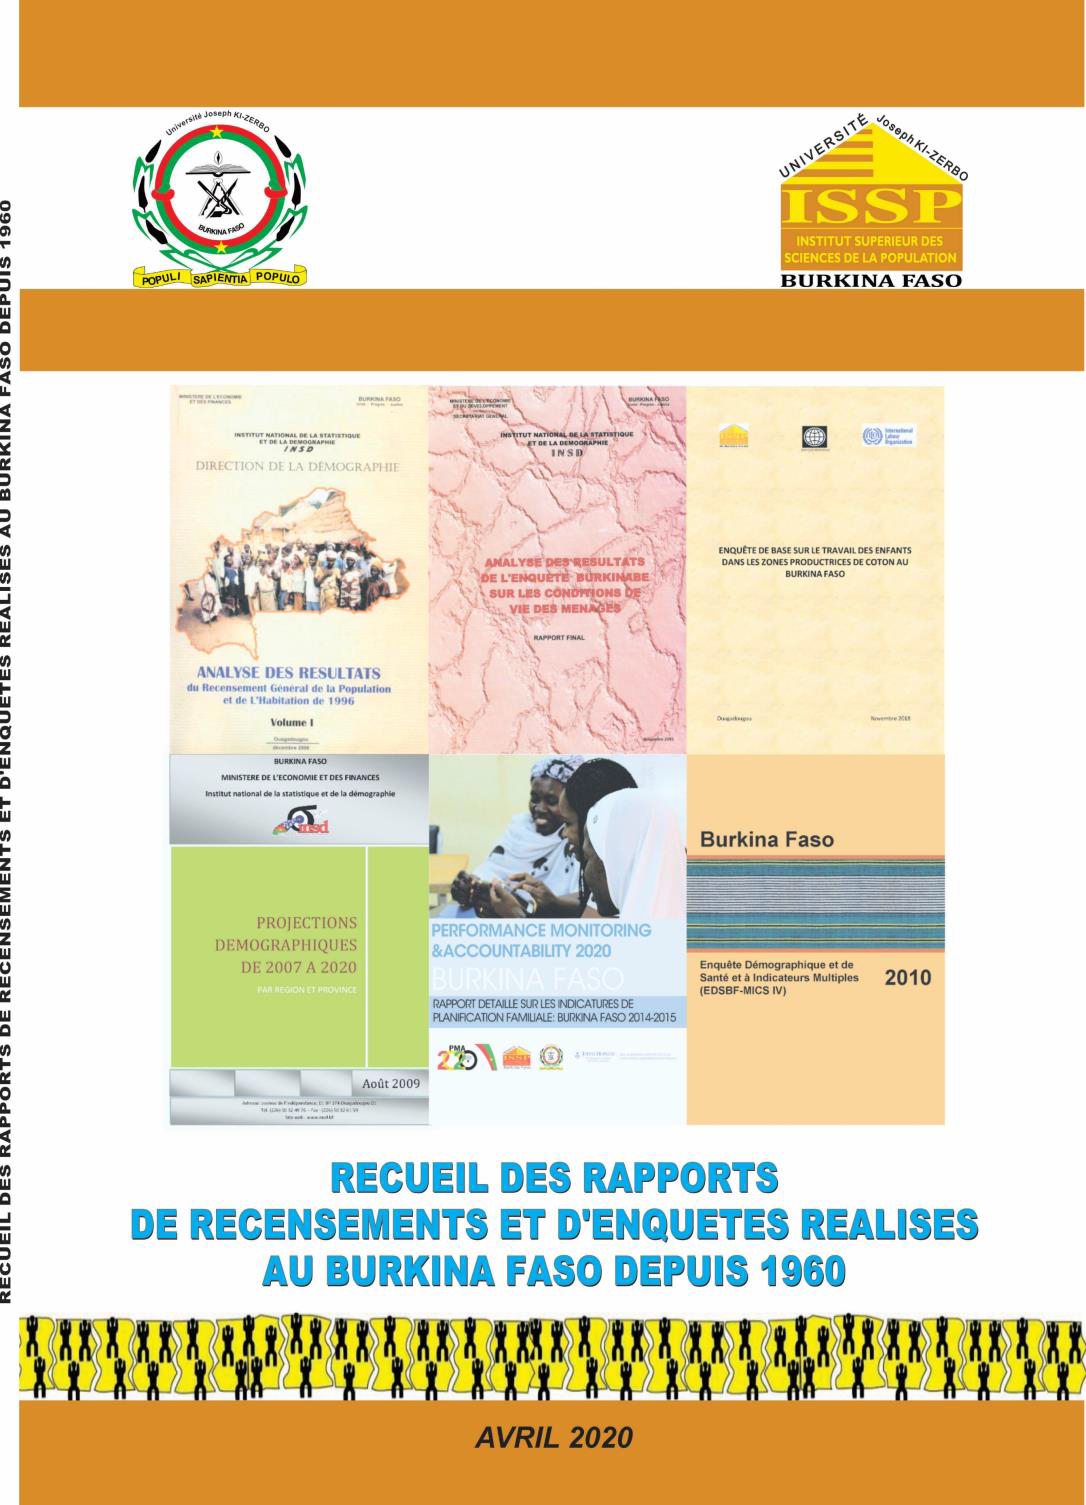 3-Recueil des rapports de recensements et d’enquêtes réalisés au Burkina Faso depuis 1960